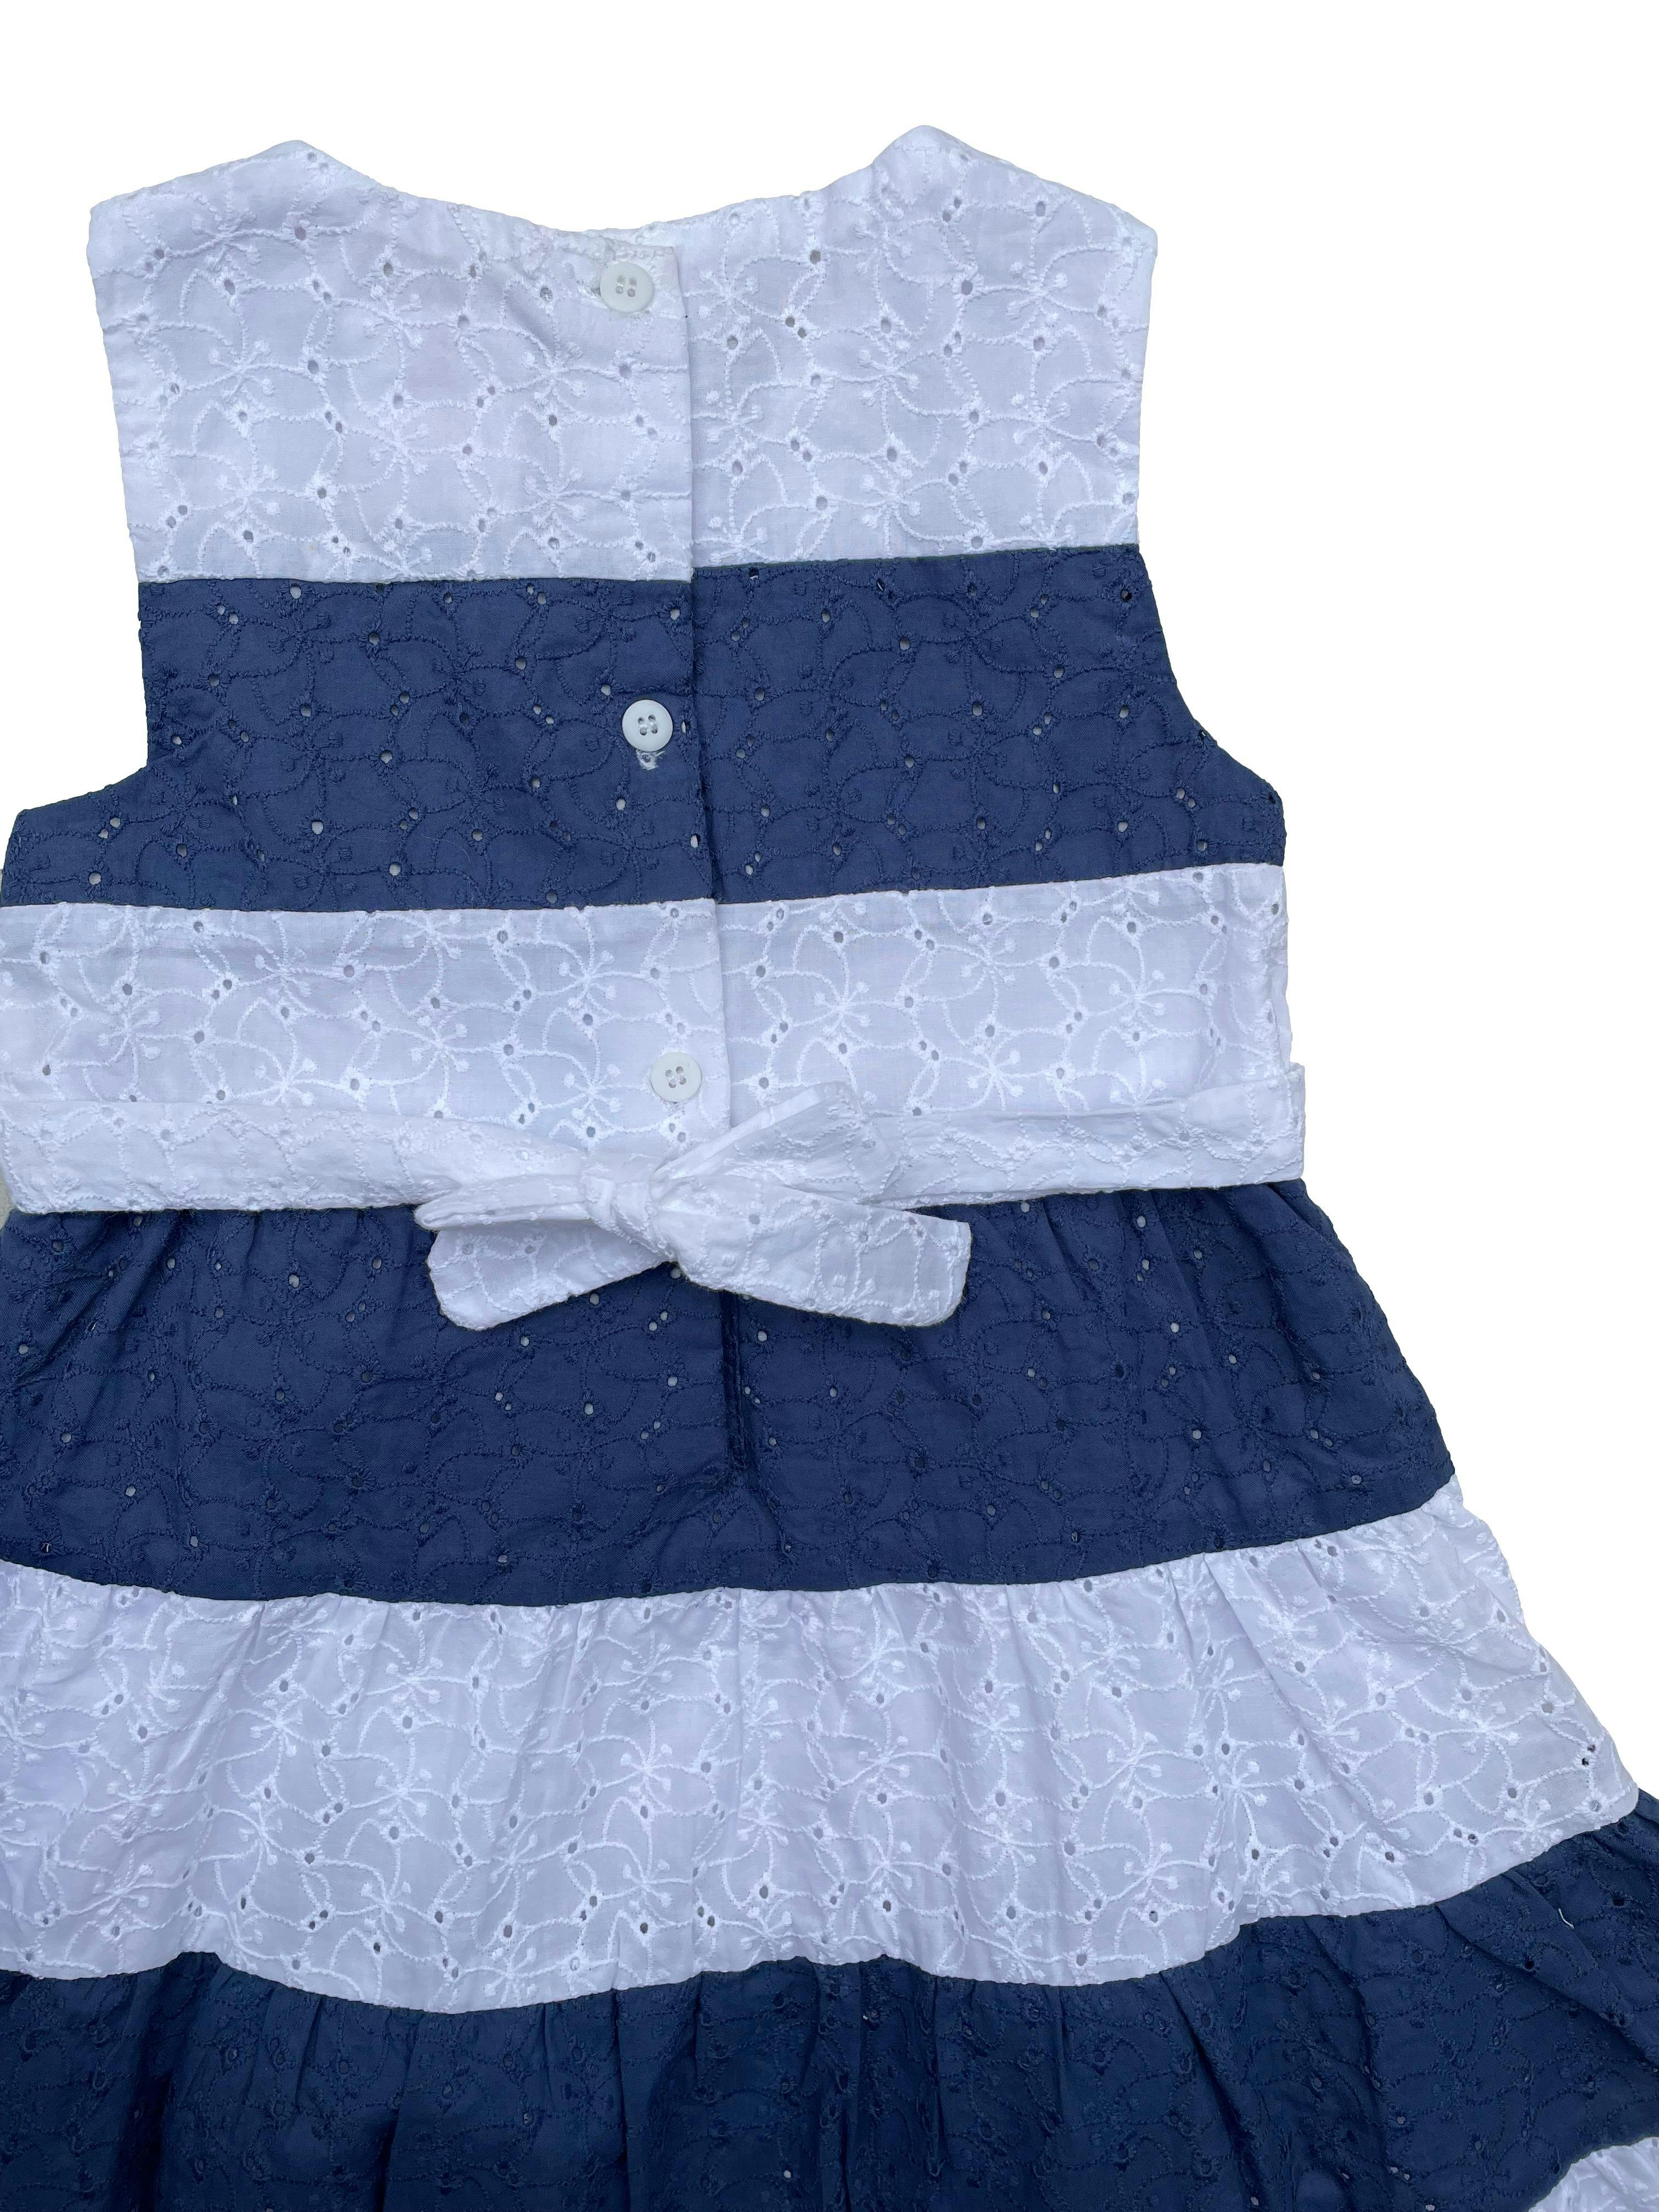 Vestido Bubble Gummers de algodón bordado, en franjas blancas y azules, forrado y con botones en la espalda. 